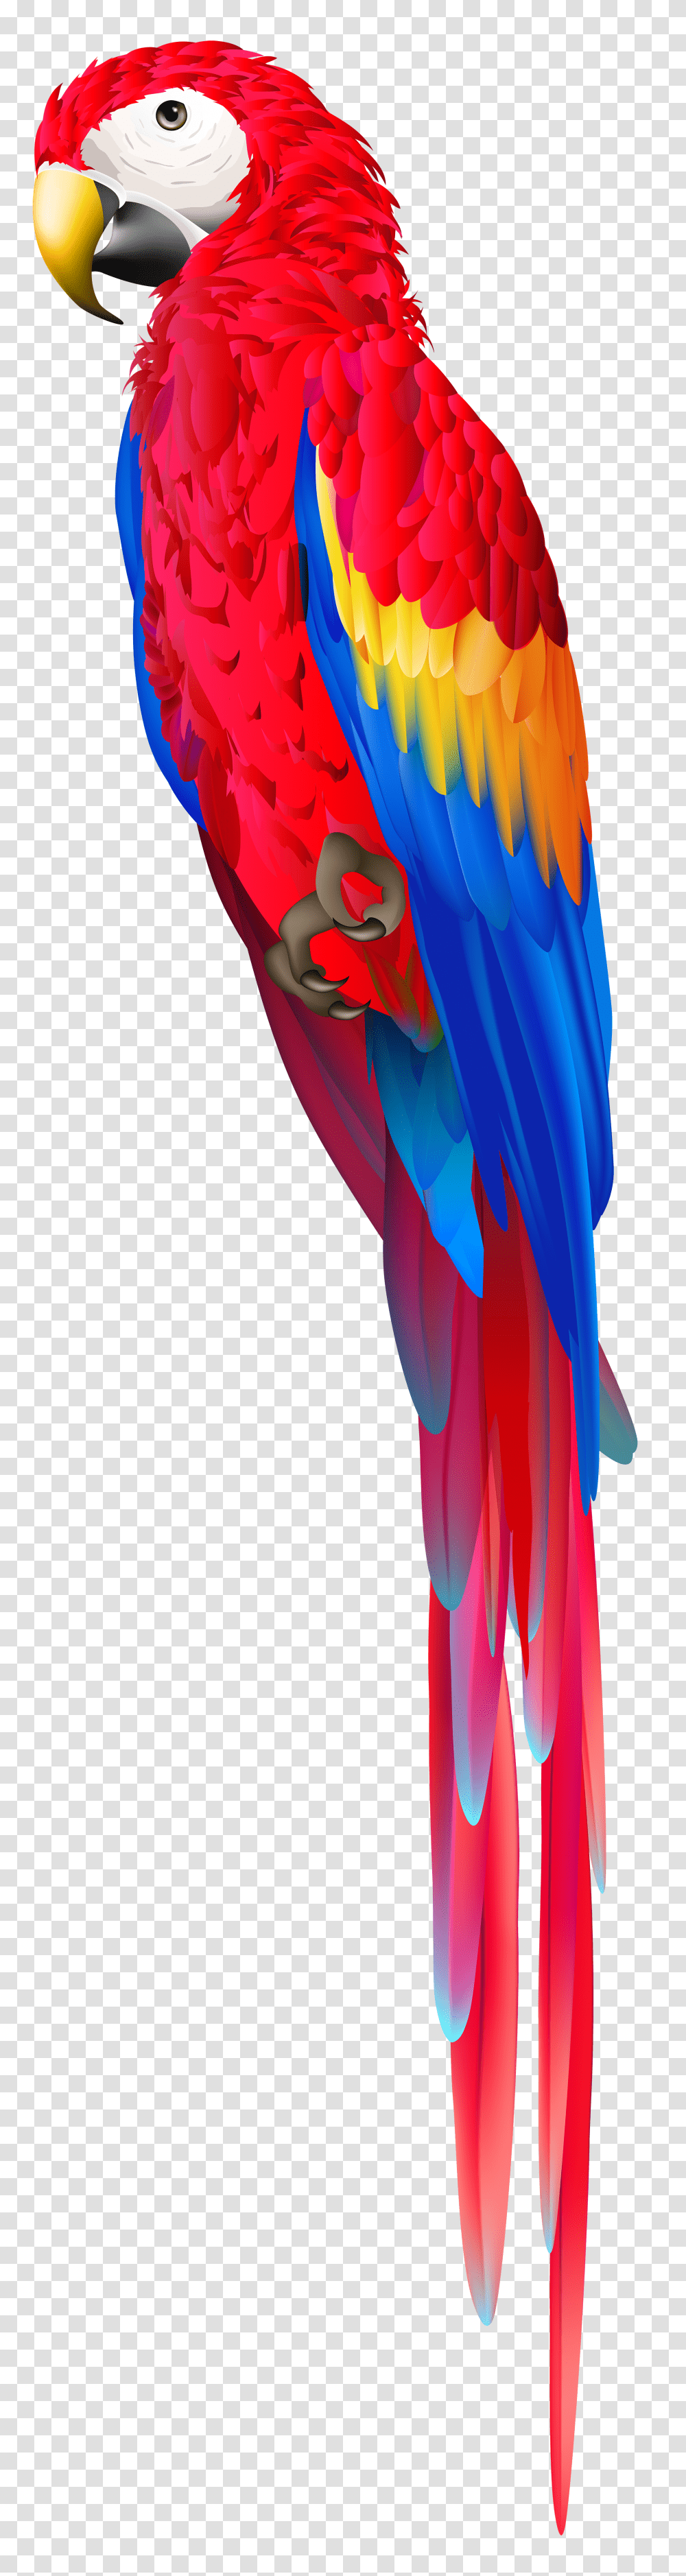 Red Parrot Clip Art, Animal, Bird, Modern Art Transparent Png